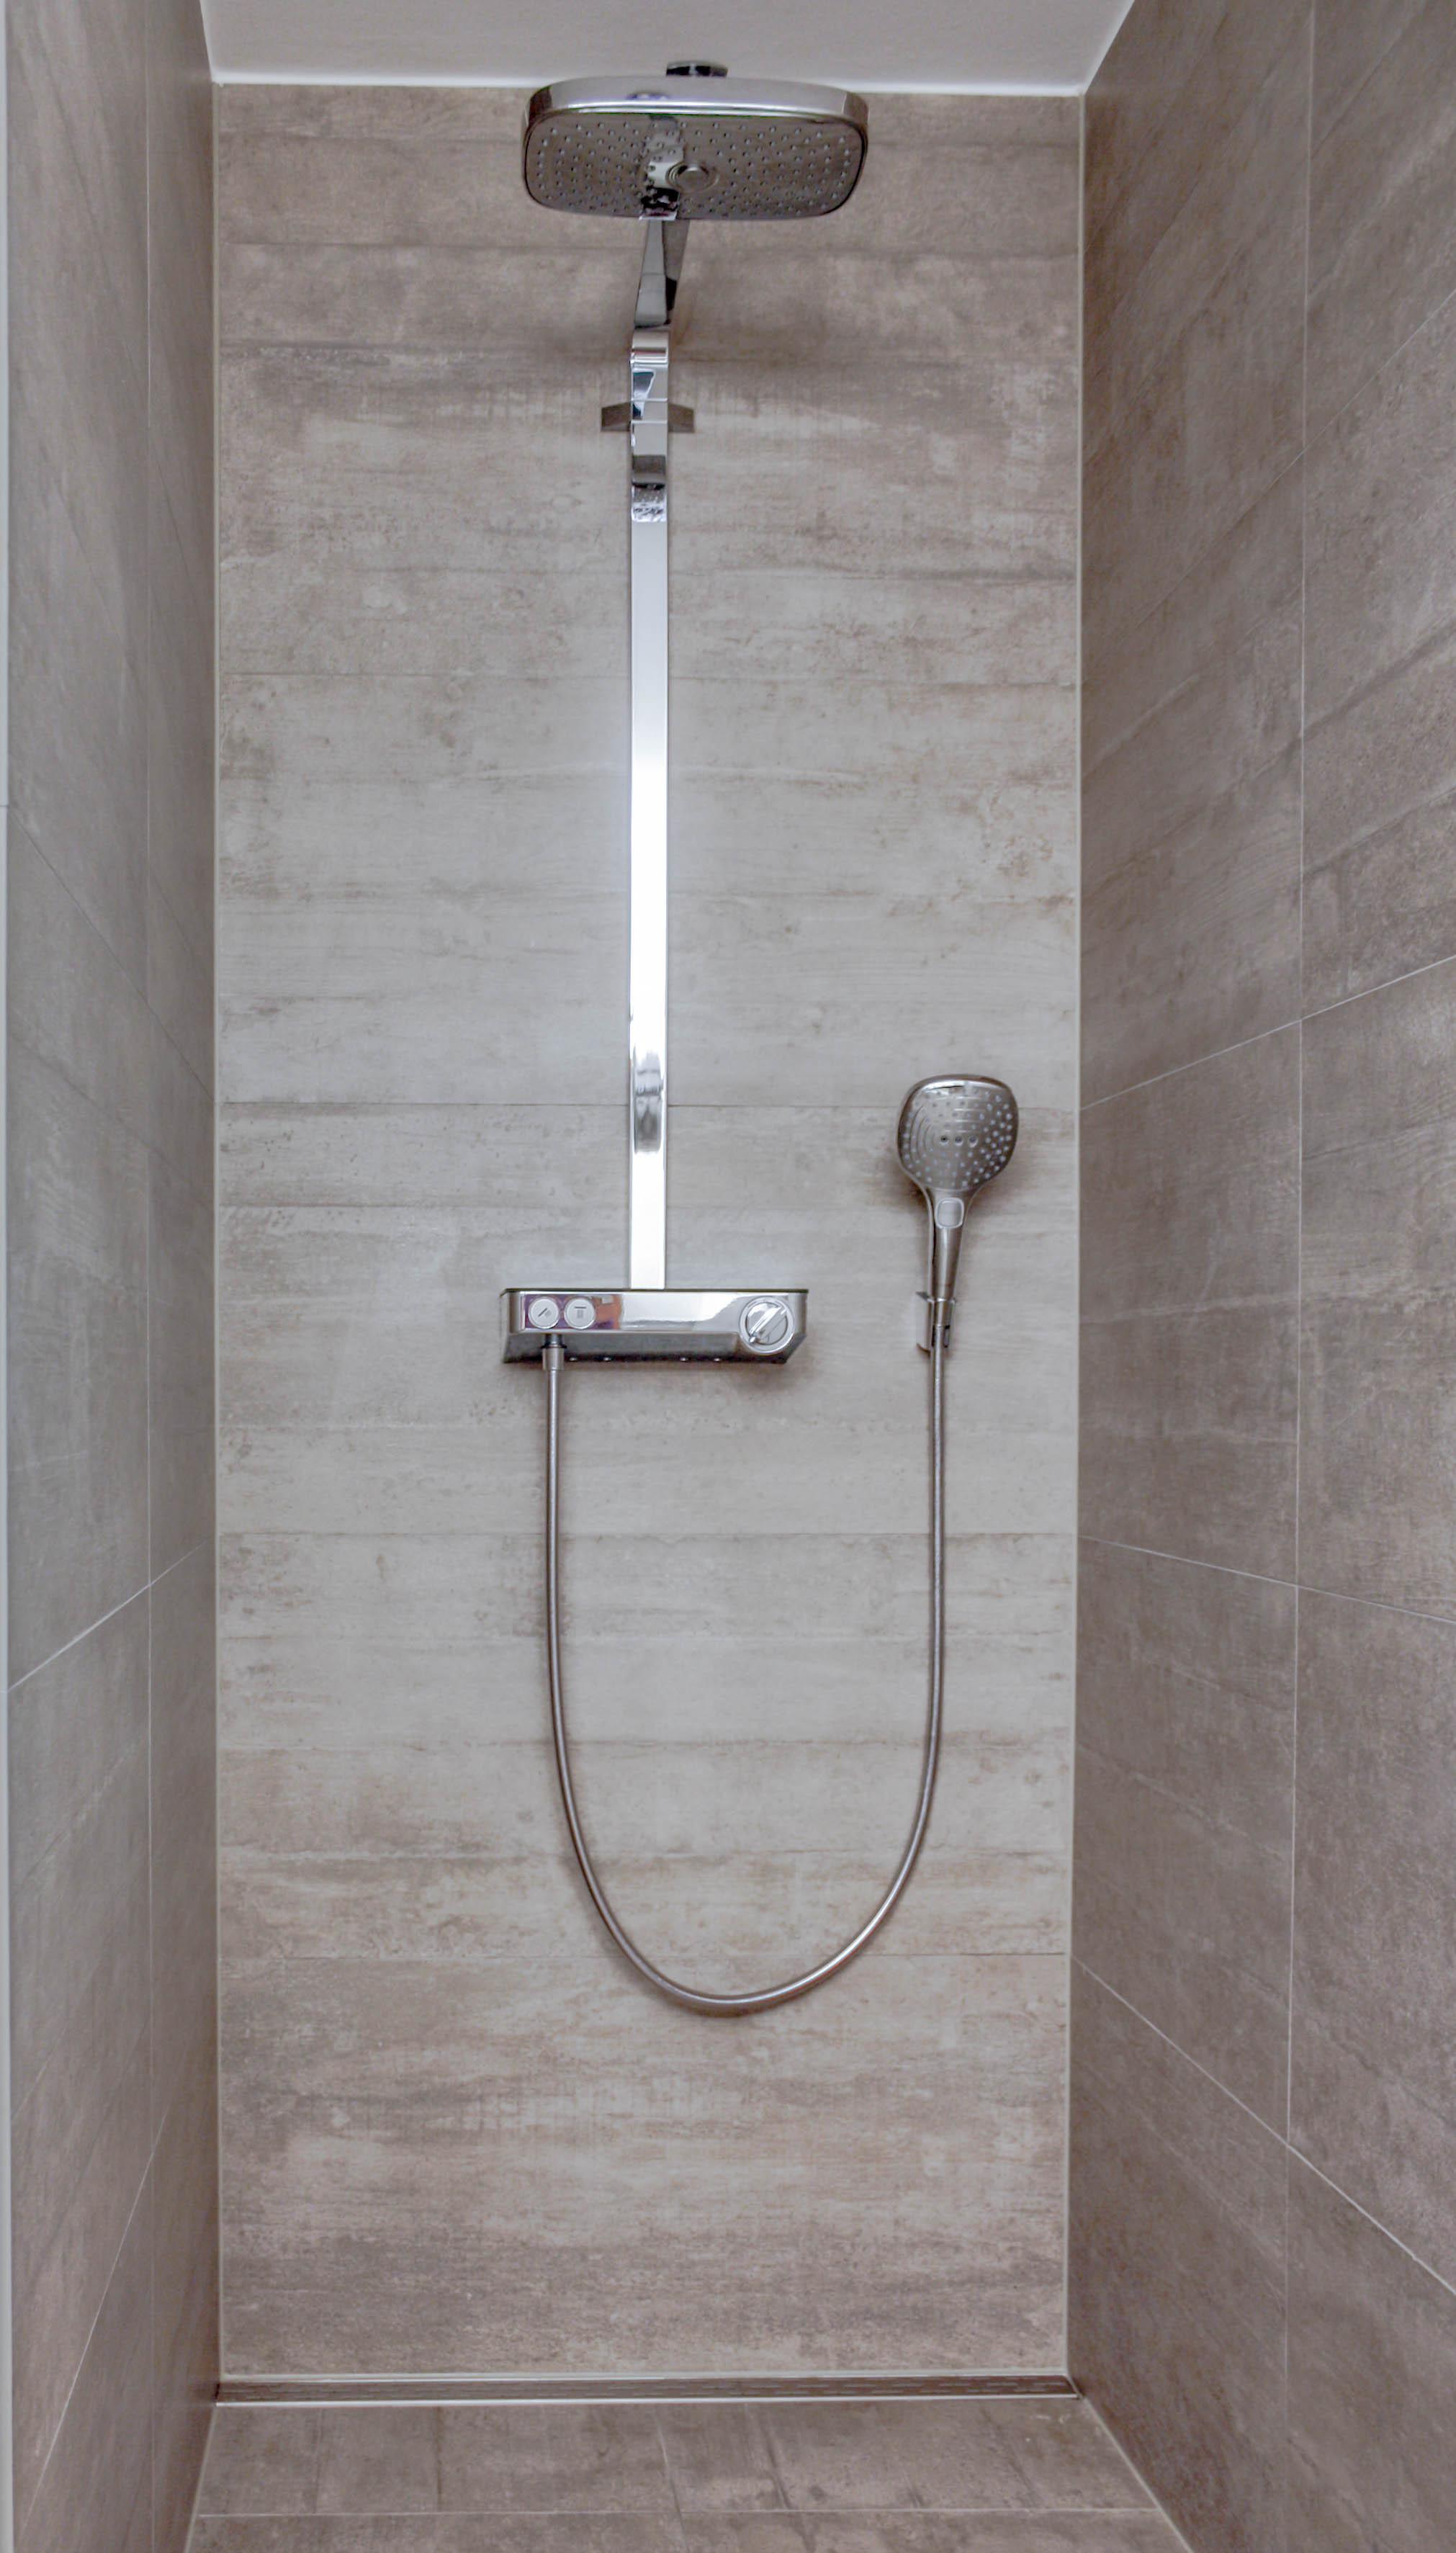 Offene Dusche in Betonoptik #dusche ©HEIMWOHL GmbH